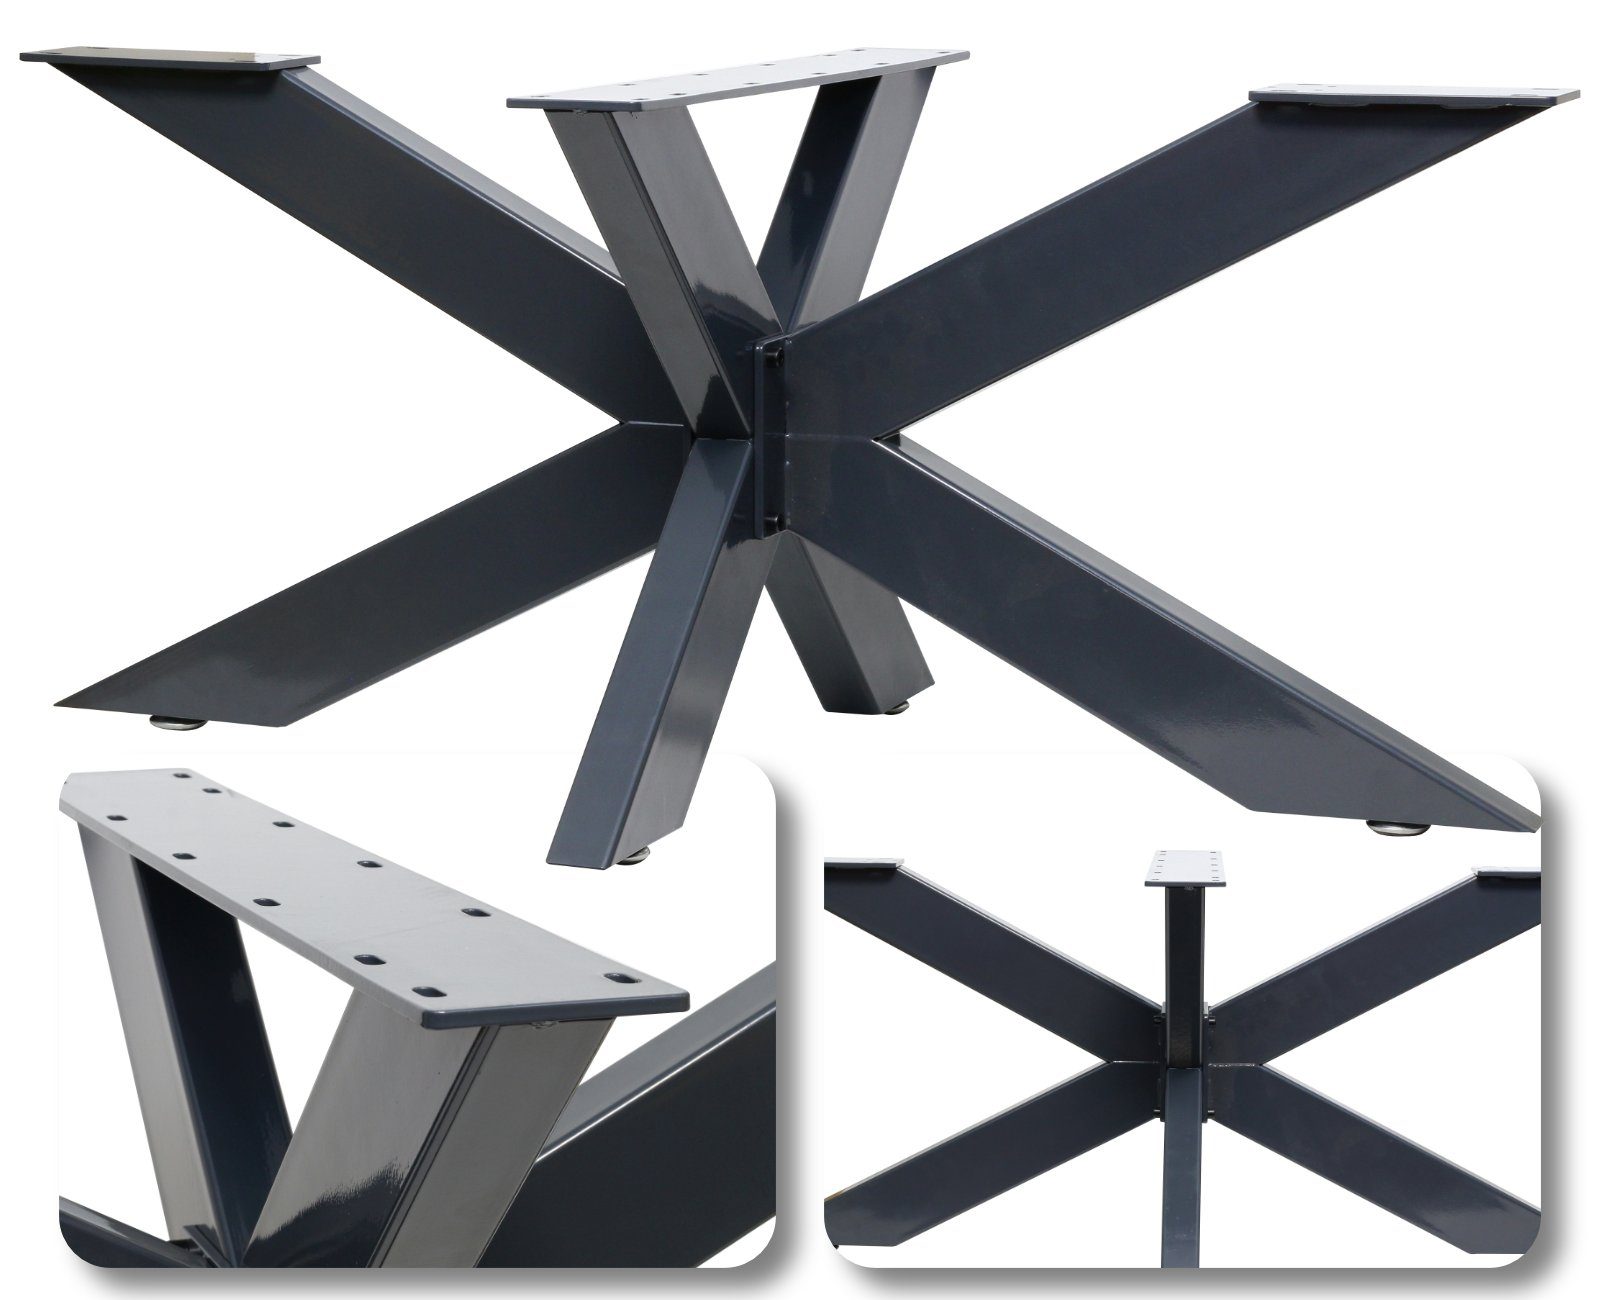 HAGO Tischbein DIY Design Tischbein Kreuzgestell Tischgestell Industrielook Rustikal